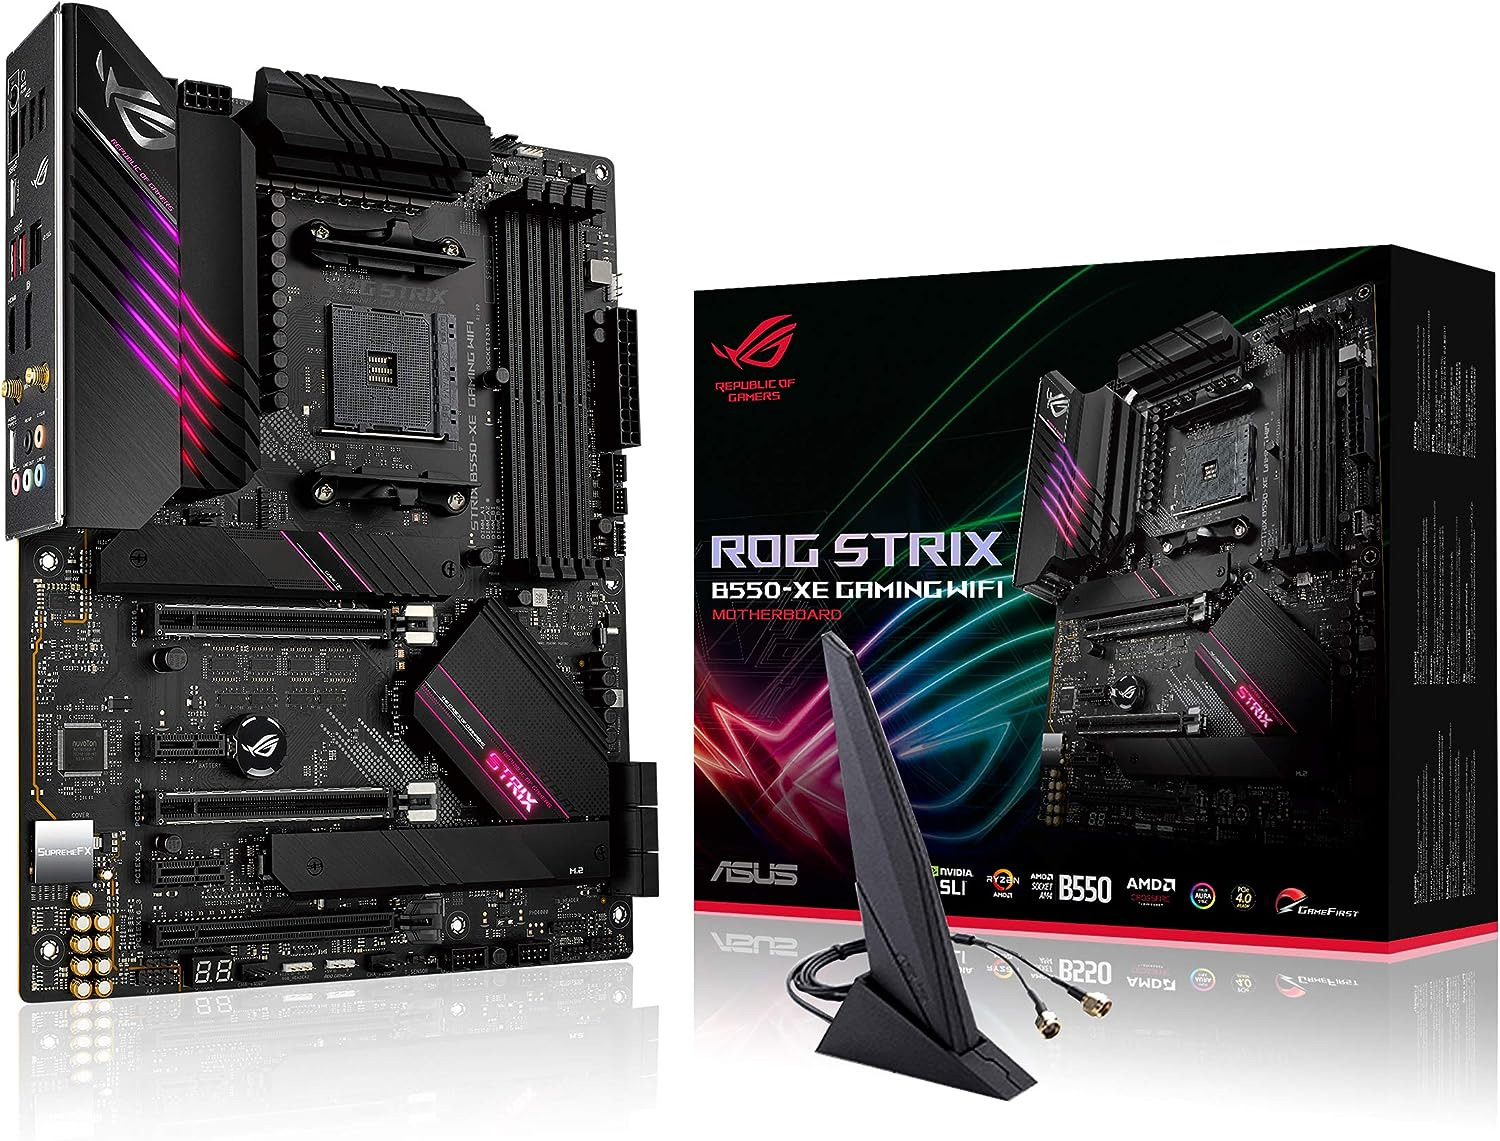 ASUS ROG Strix AM4 Gaming Motherboard - WiFi 6, 2.5Gb LAN, 16 Power Stage